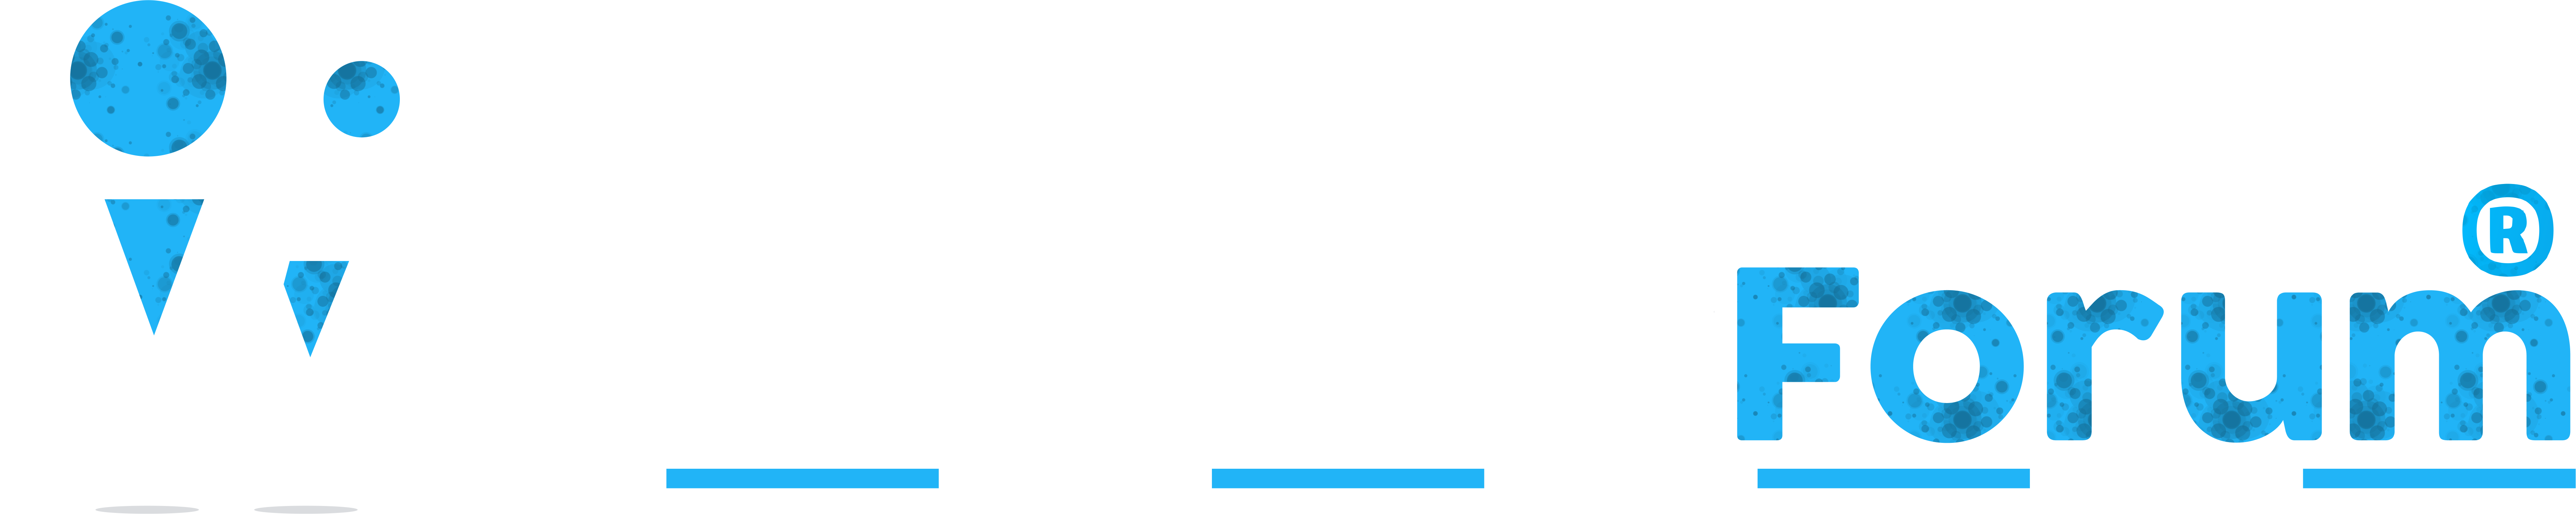 Webmaster Forum | Türkiyenin En iyi Webmaster Platformu